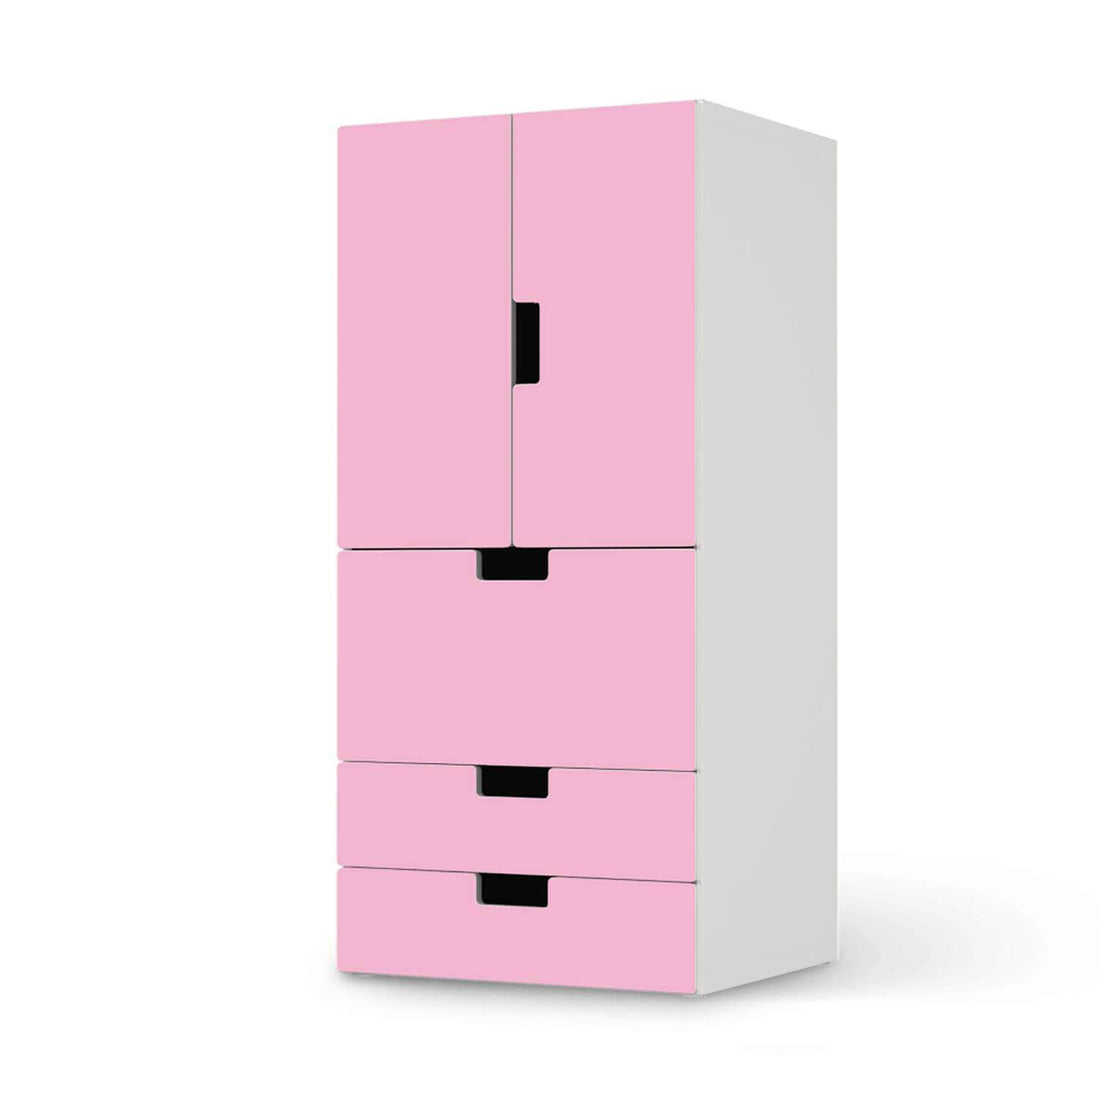 Möbelfolie Pink Light - IKEA Stuva kombiniert - 3 Schubladen und 2 kleine Türen  - weiss